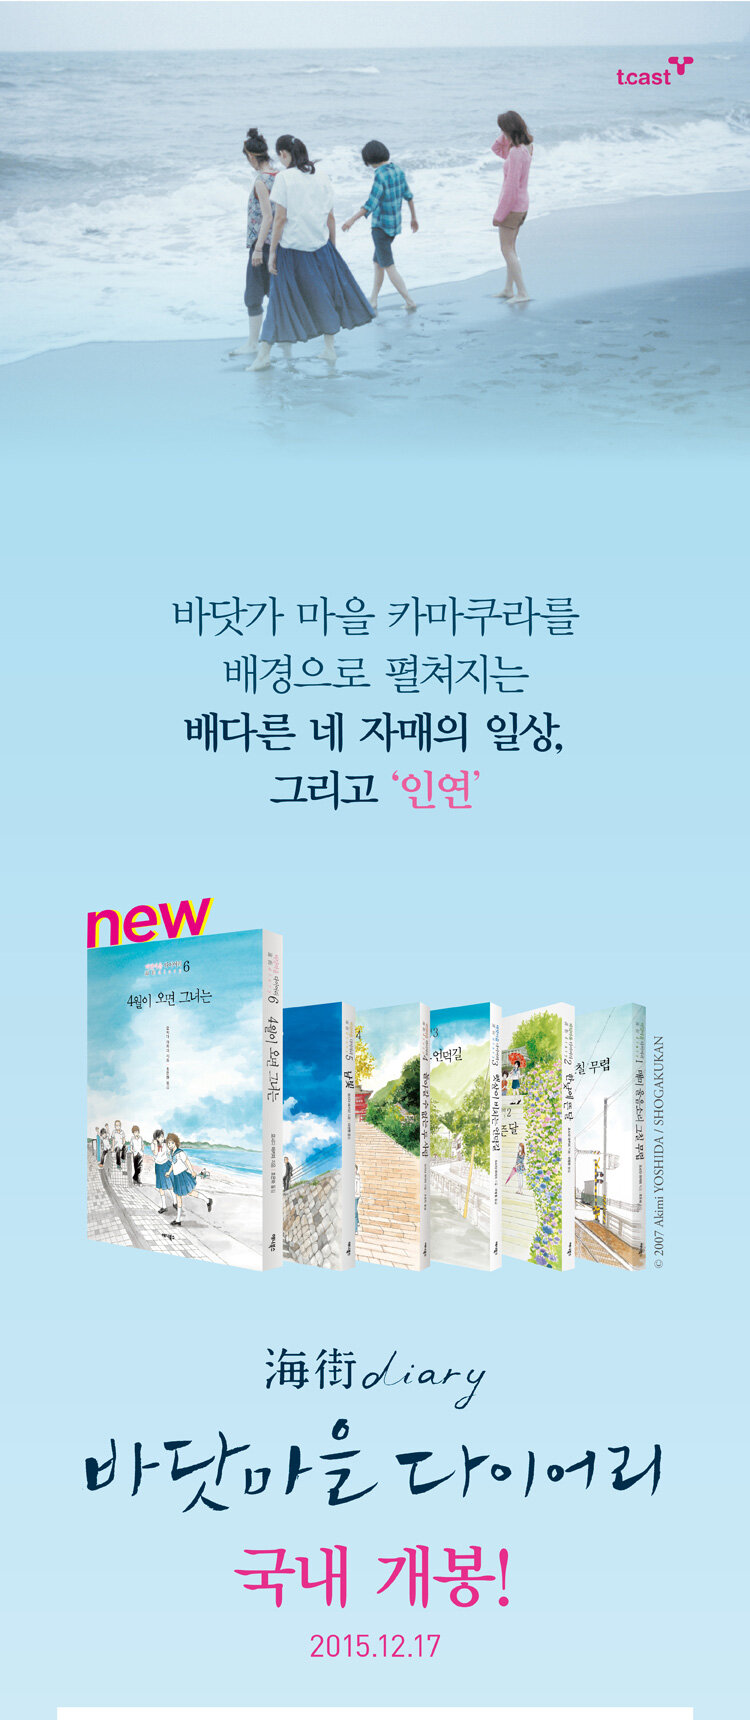 <바닷마을 다이어리> 영화 한국 개봉 기념 이벤트